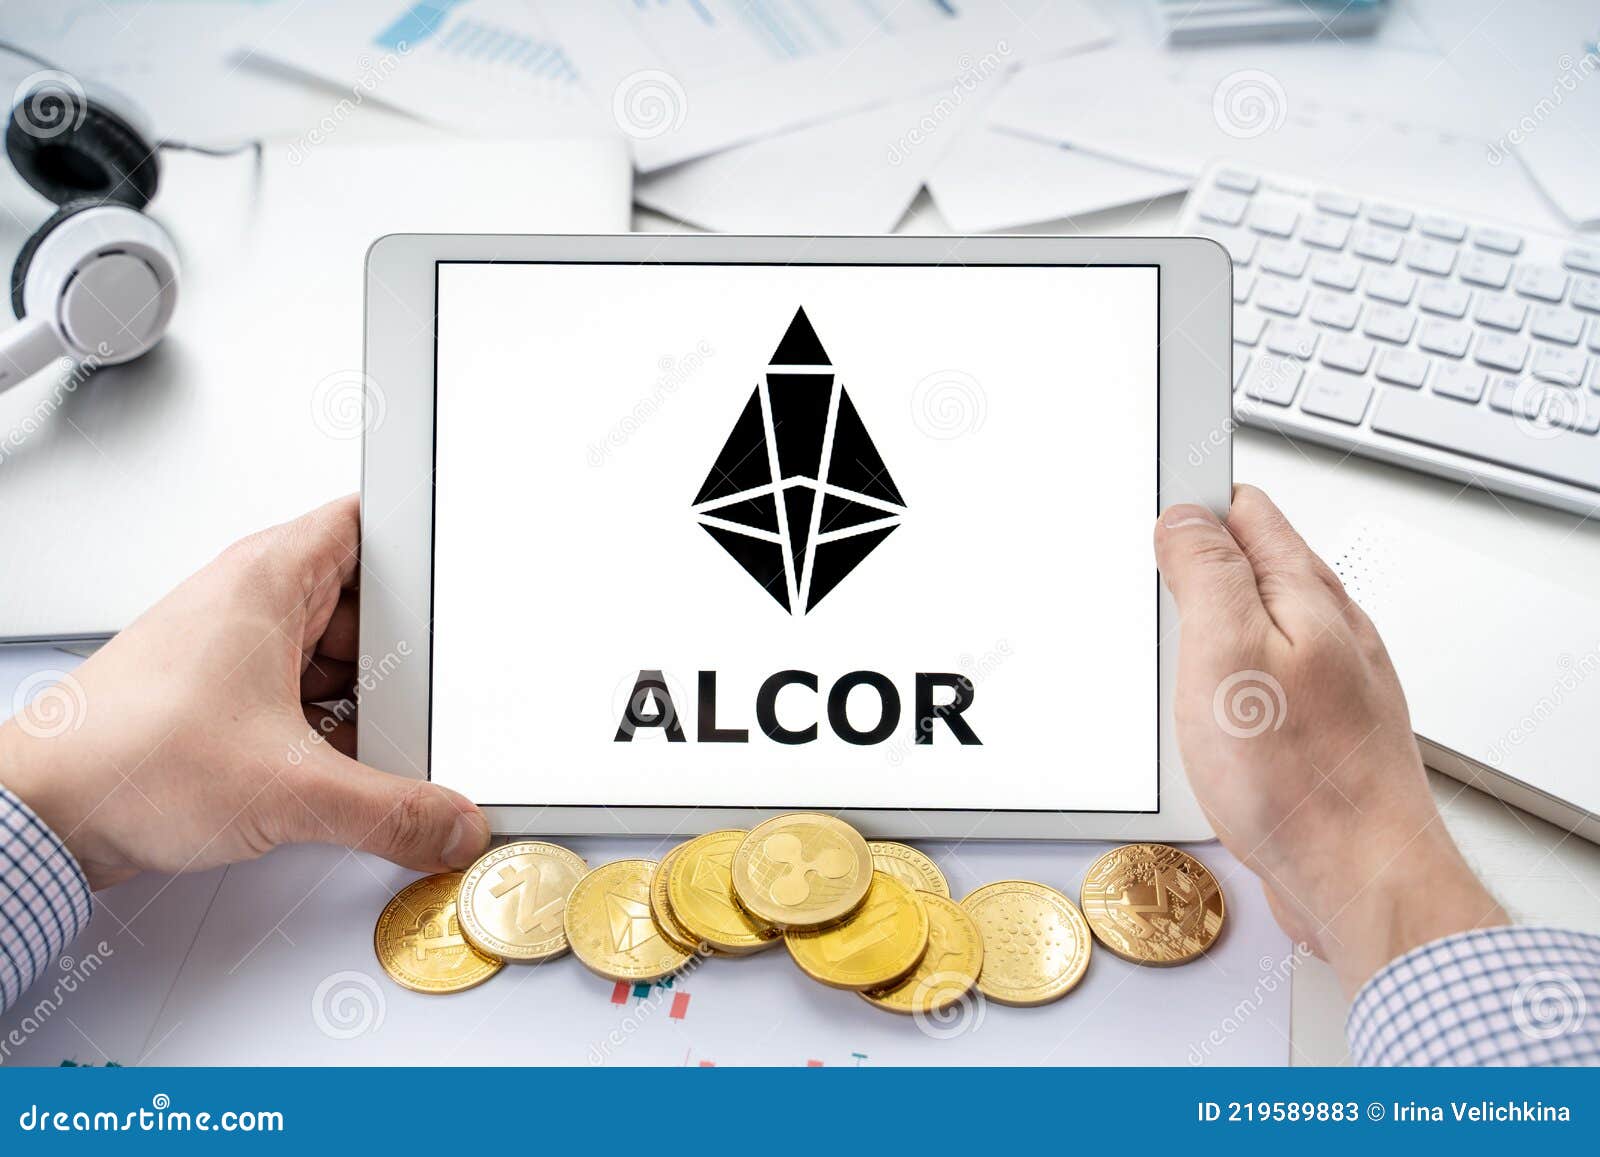 Alcor exchange